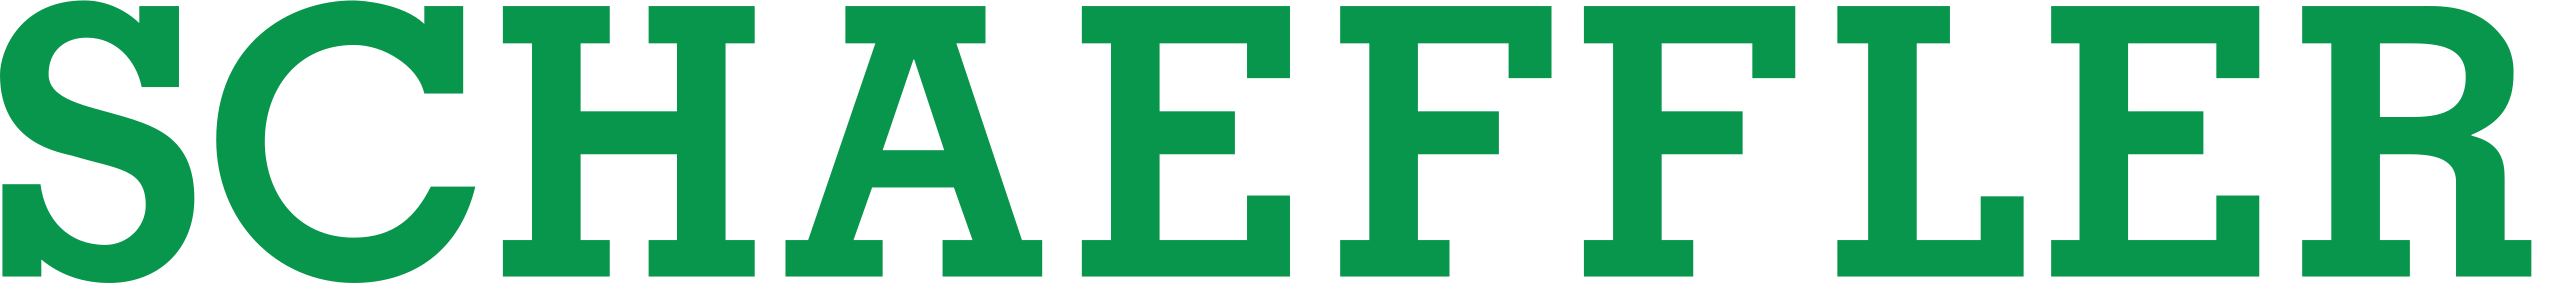 ina logo